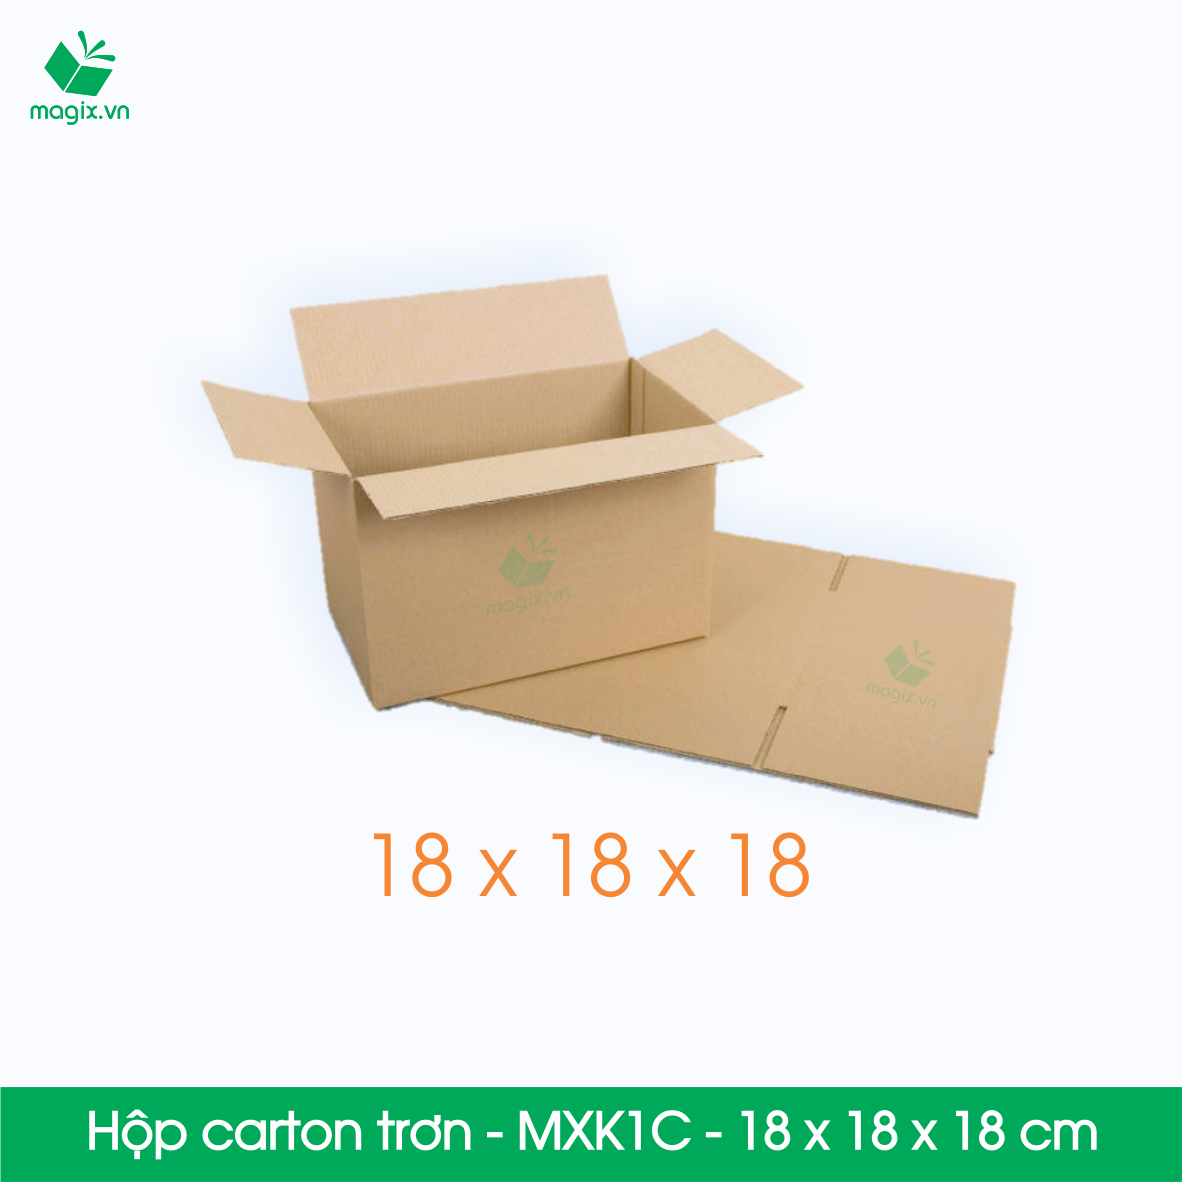 MXK1C - 18x18x18 cm - 100 thùng hộp carton trơn đóng hàng